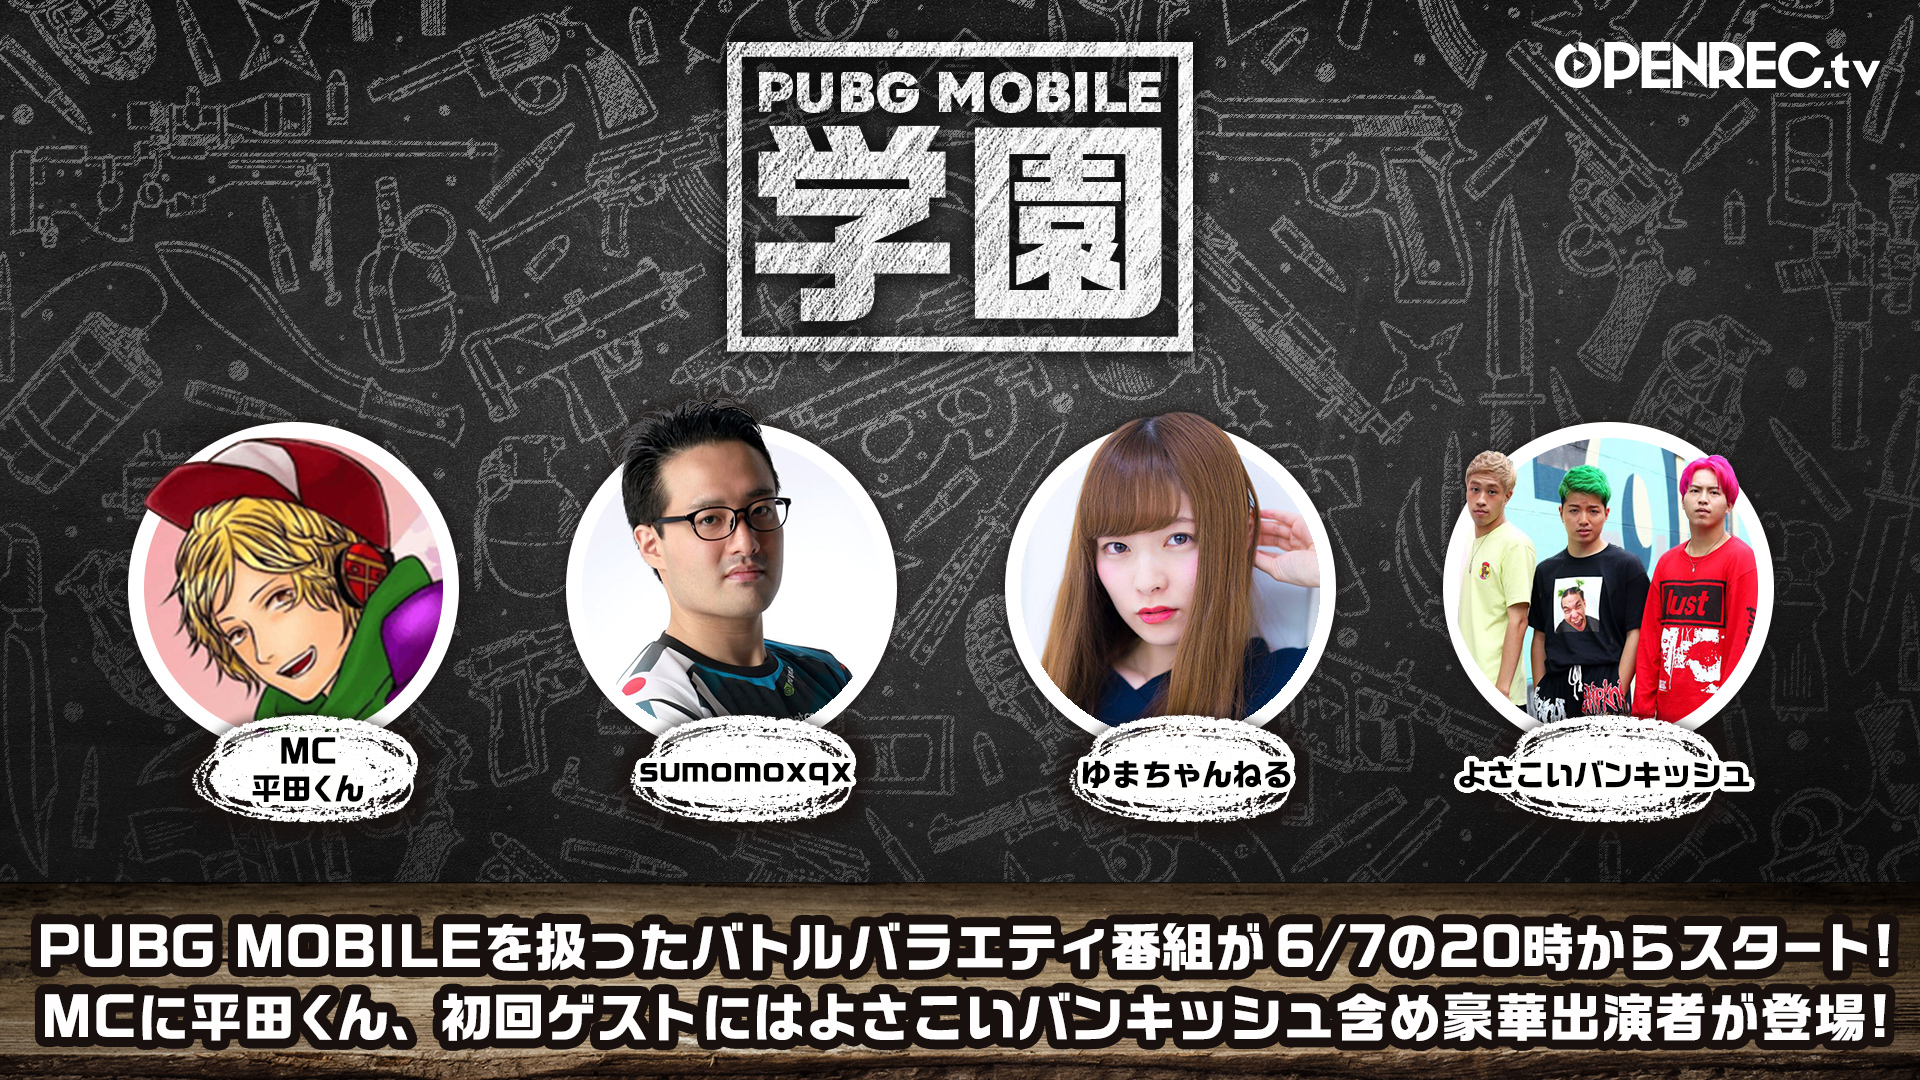 Pubg Mobile のバラエティ番組 Pubg Mobile 学園 が6月7日よりスタート Appliv Games